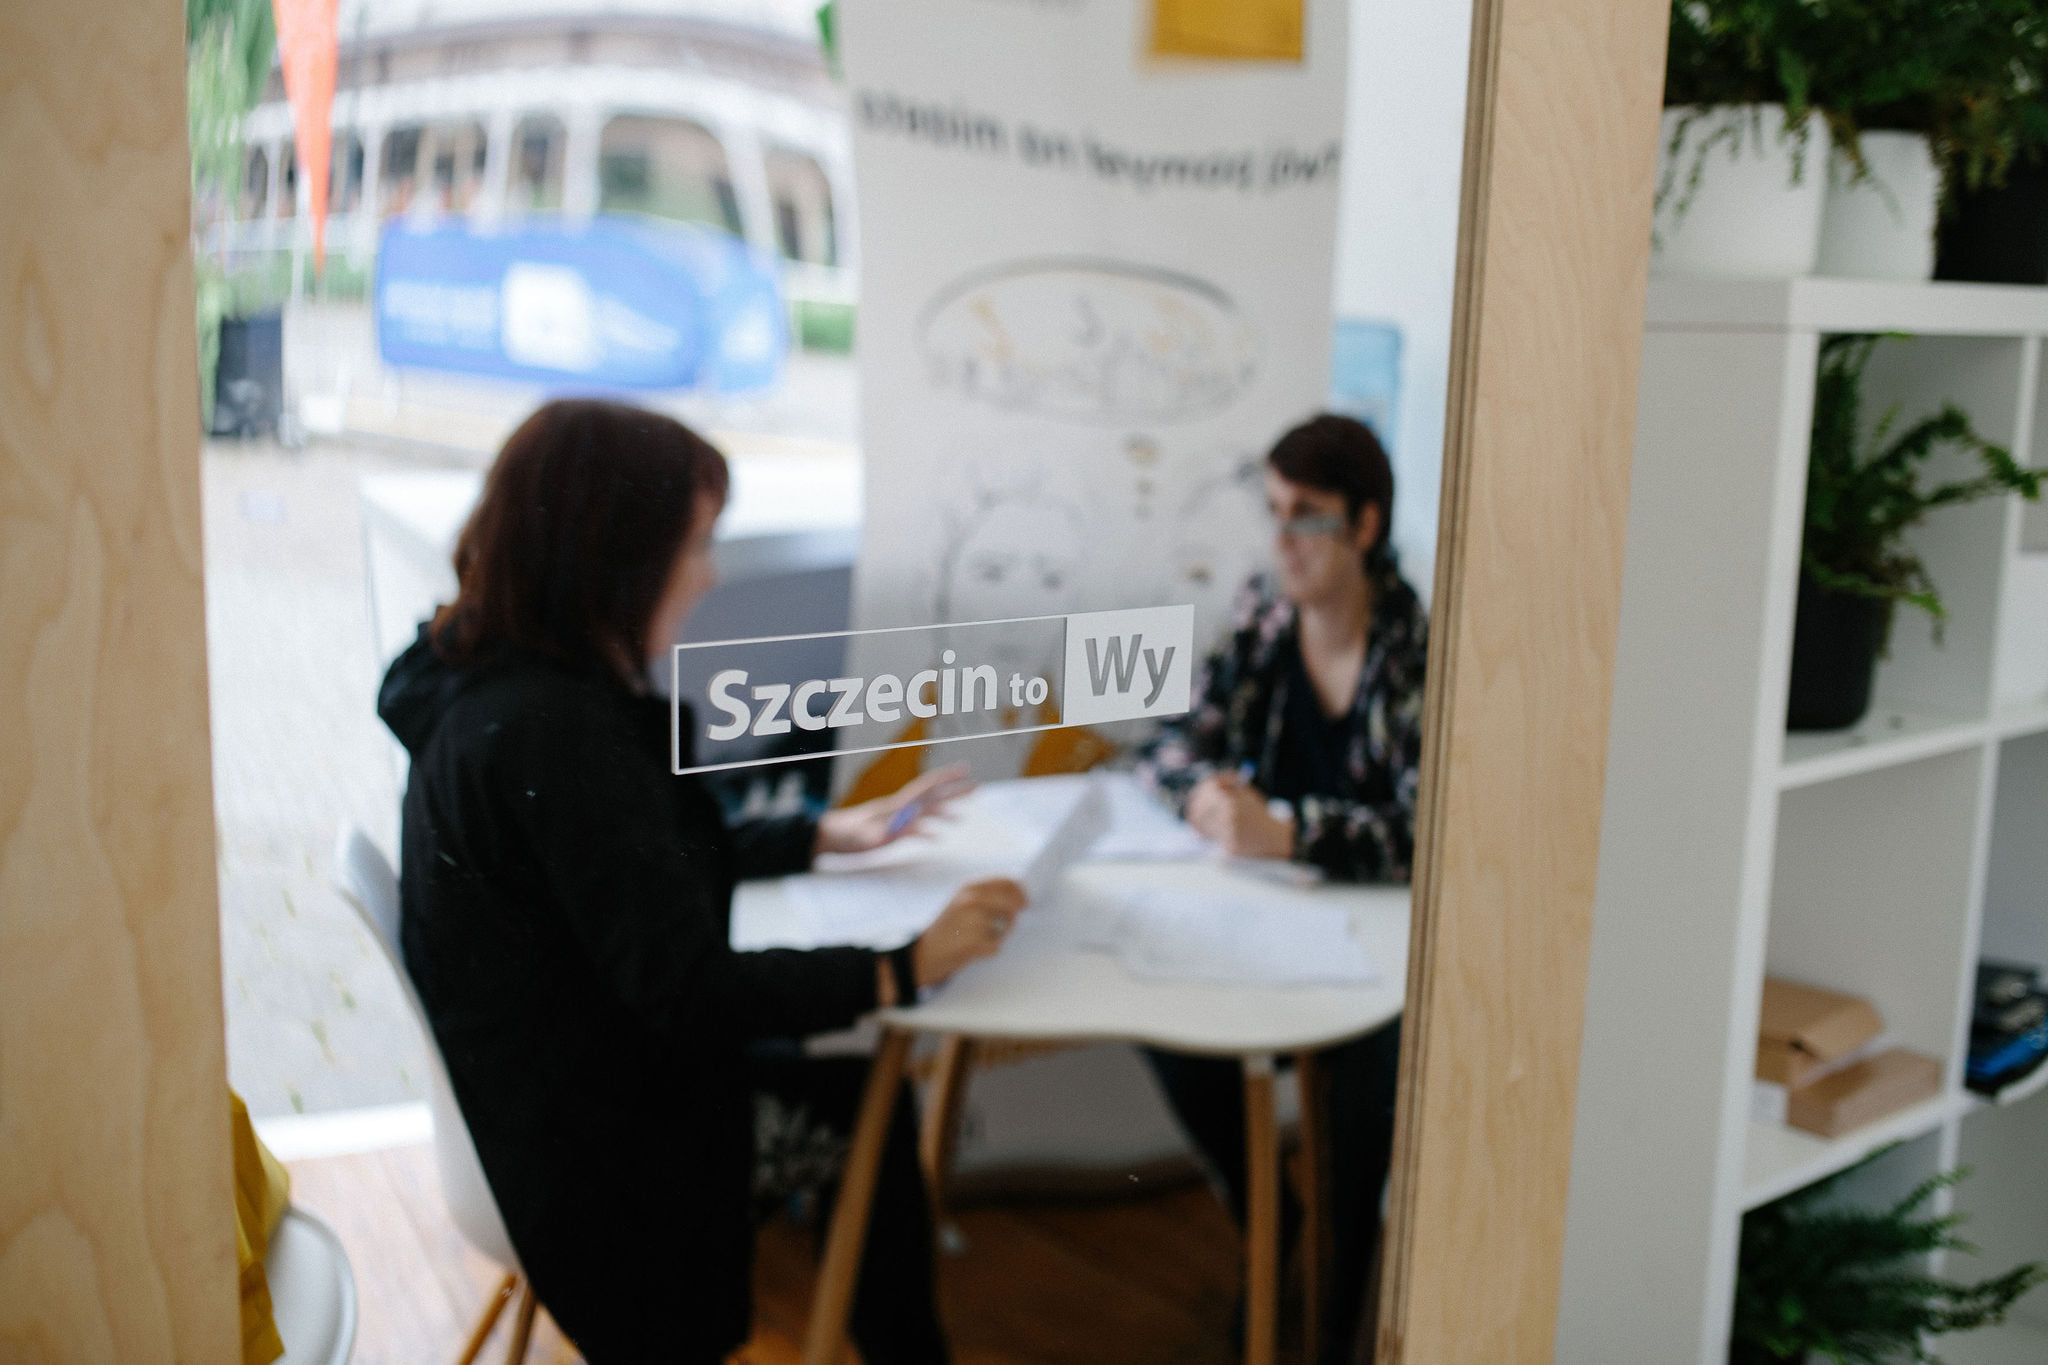 Dwie osoby siedzą przy stoliku i rozmawiają. Ich podobizny odbite są w lustrze, na którym widnieje napis: "Szczecin to Wy".